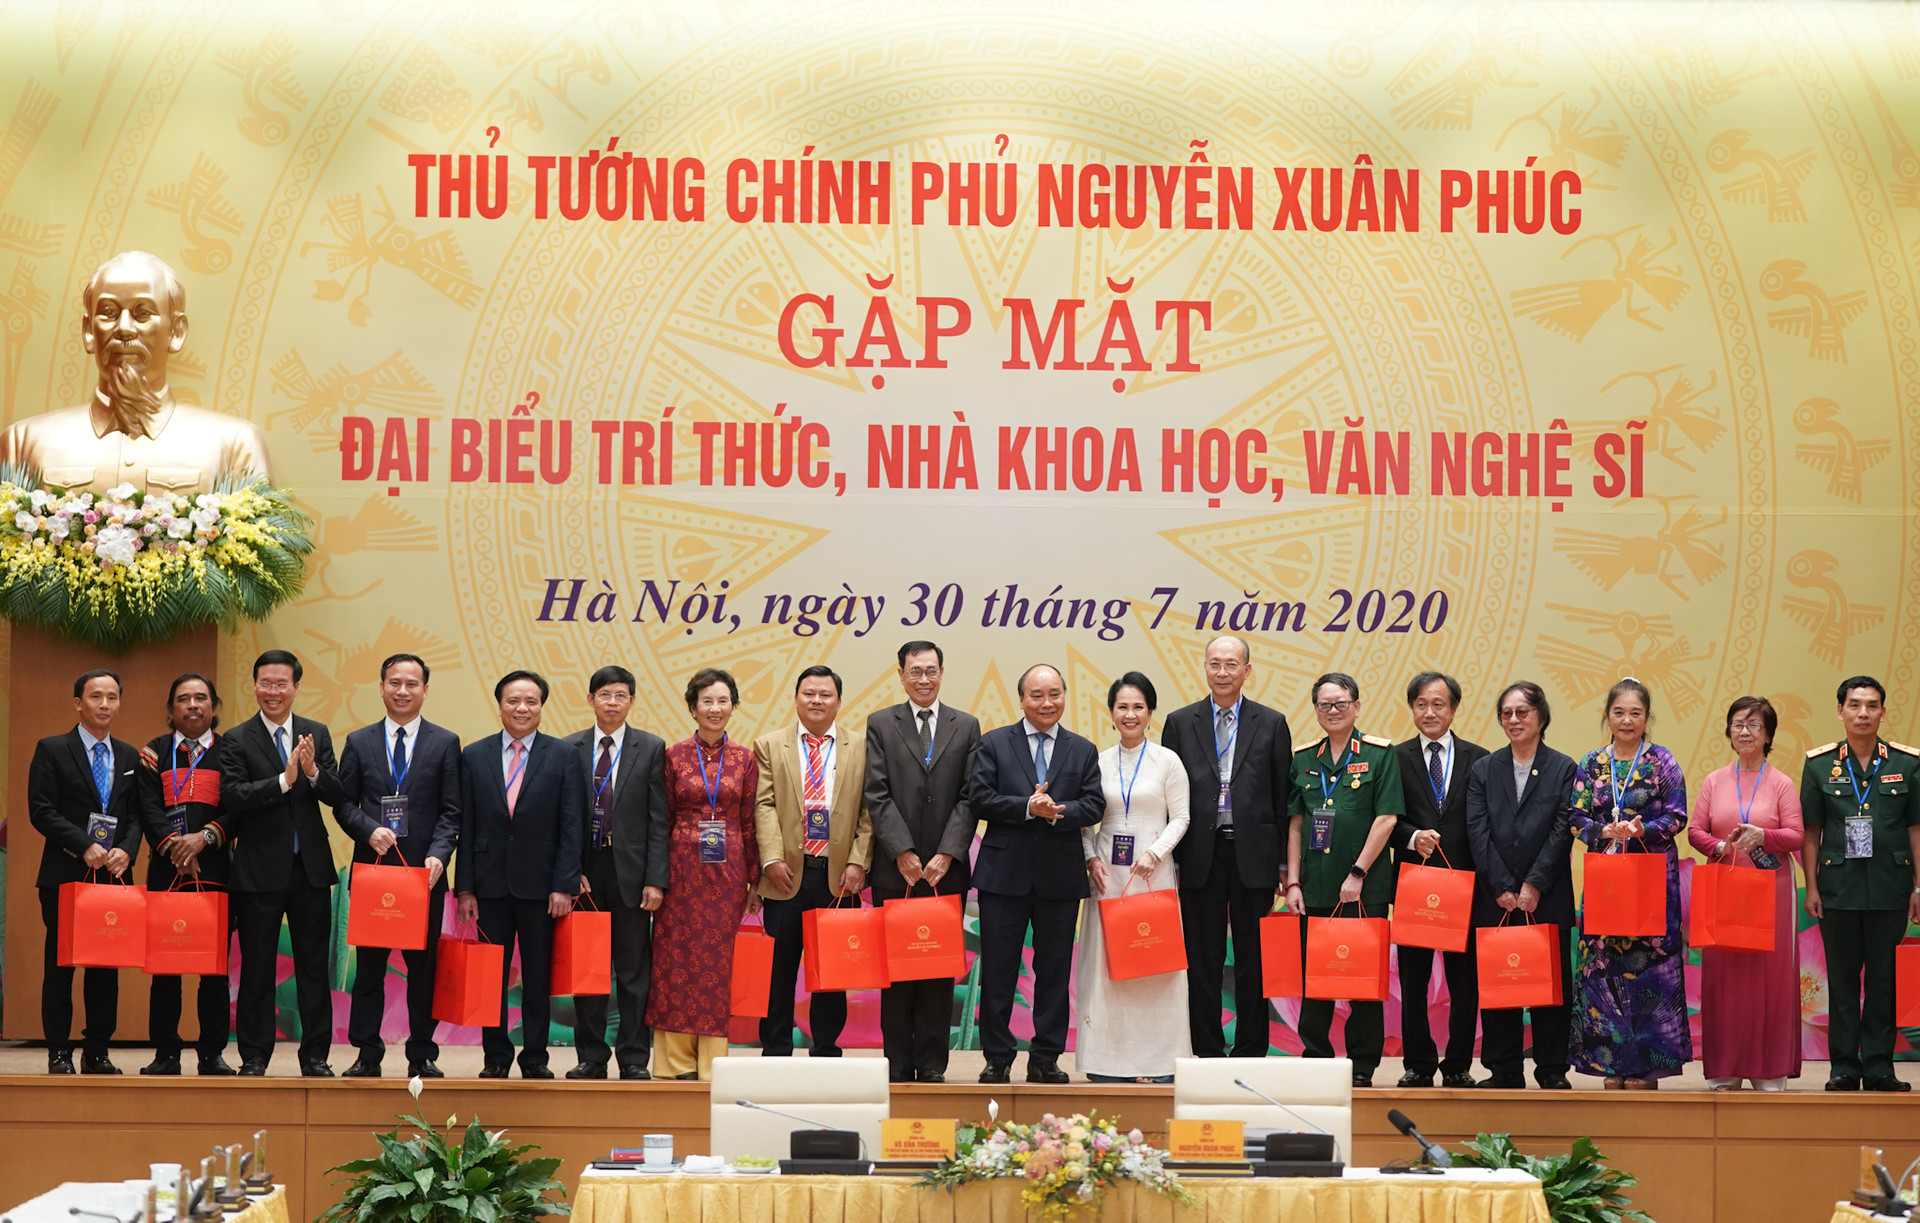 Thủ tướng Nguyễn Xuân Phúc tặng quà các đại biểu dự buổi gặp mặt. Ảnh: VGP.